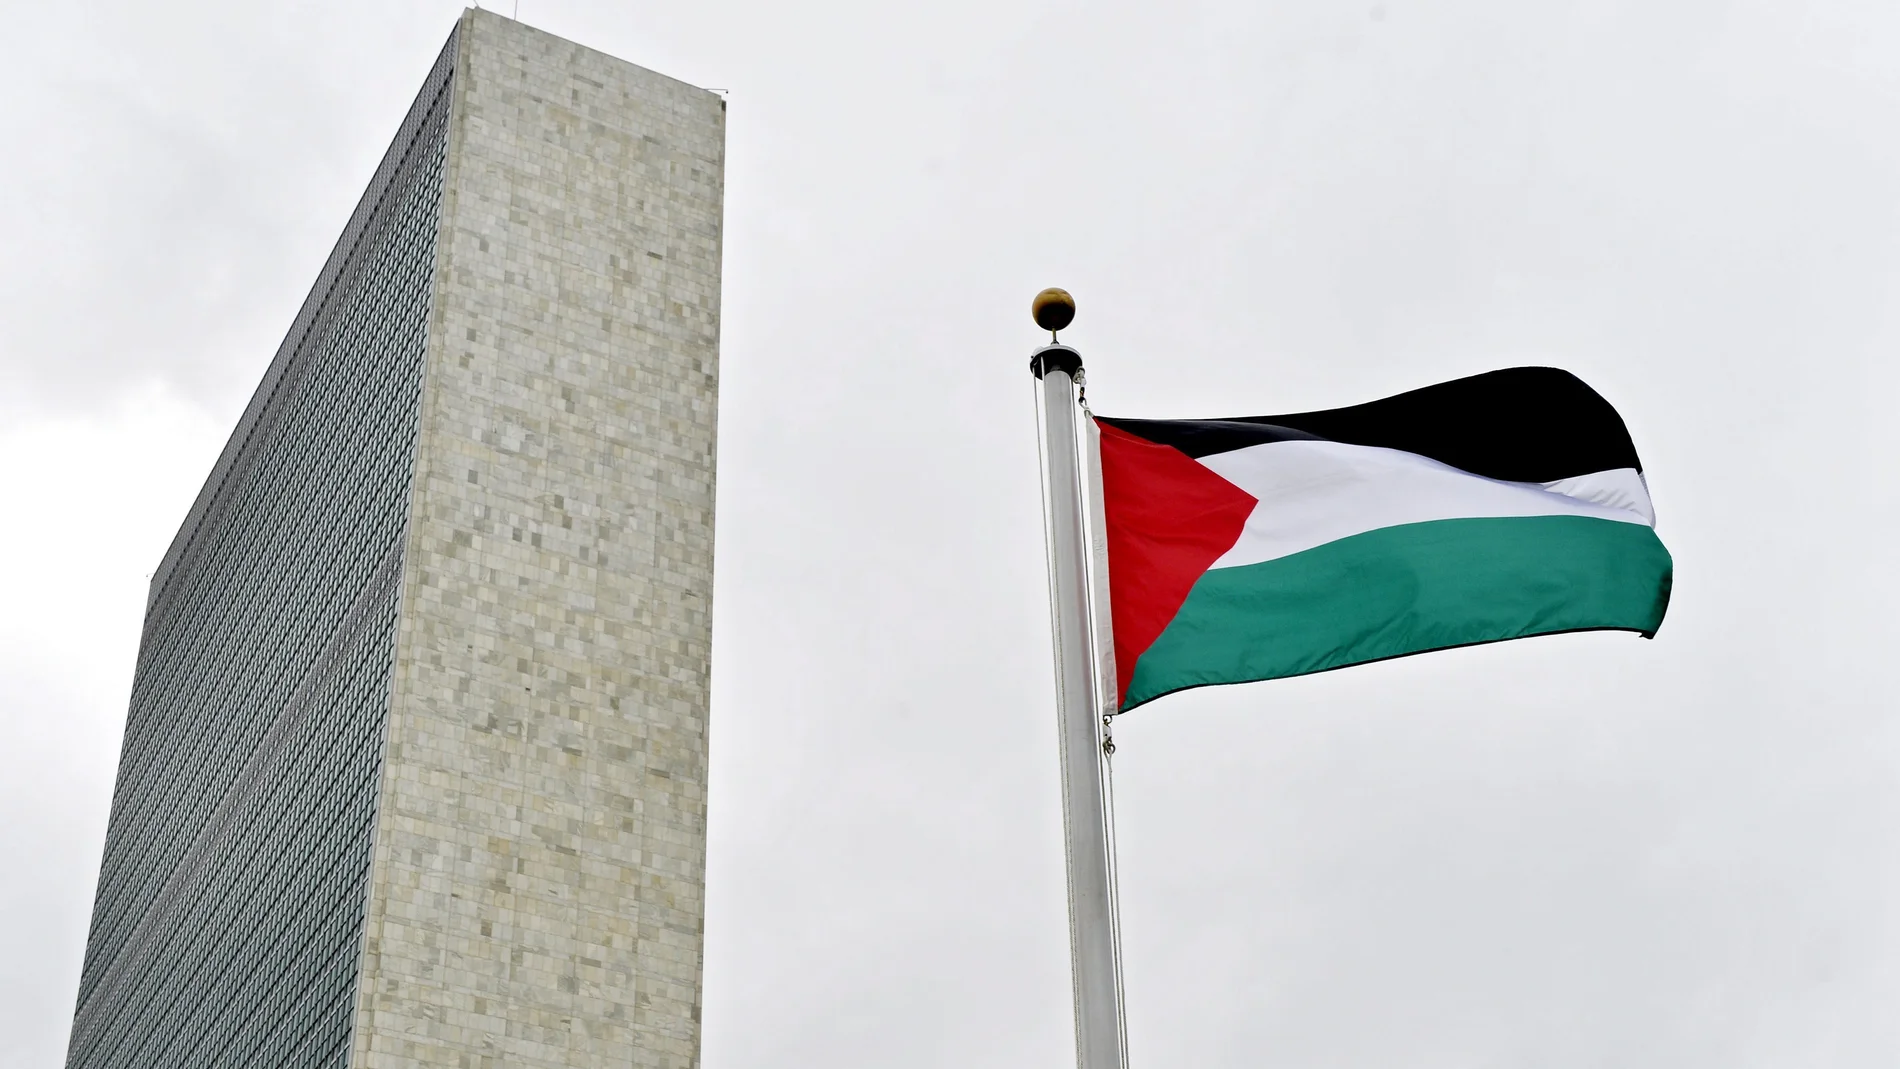 Vista de la bandera palestina izada por primera vez en la sede de la ONU